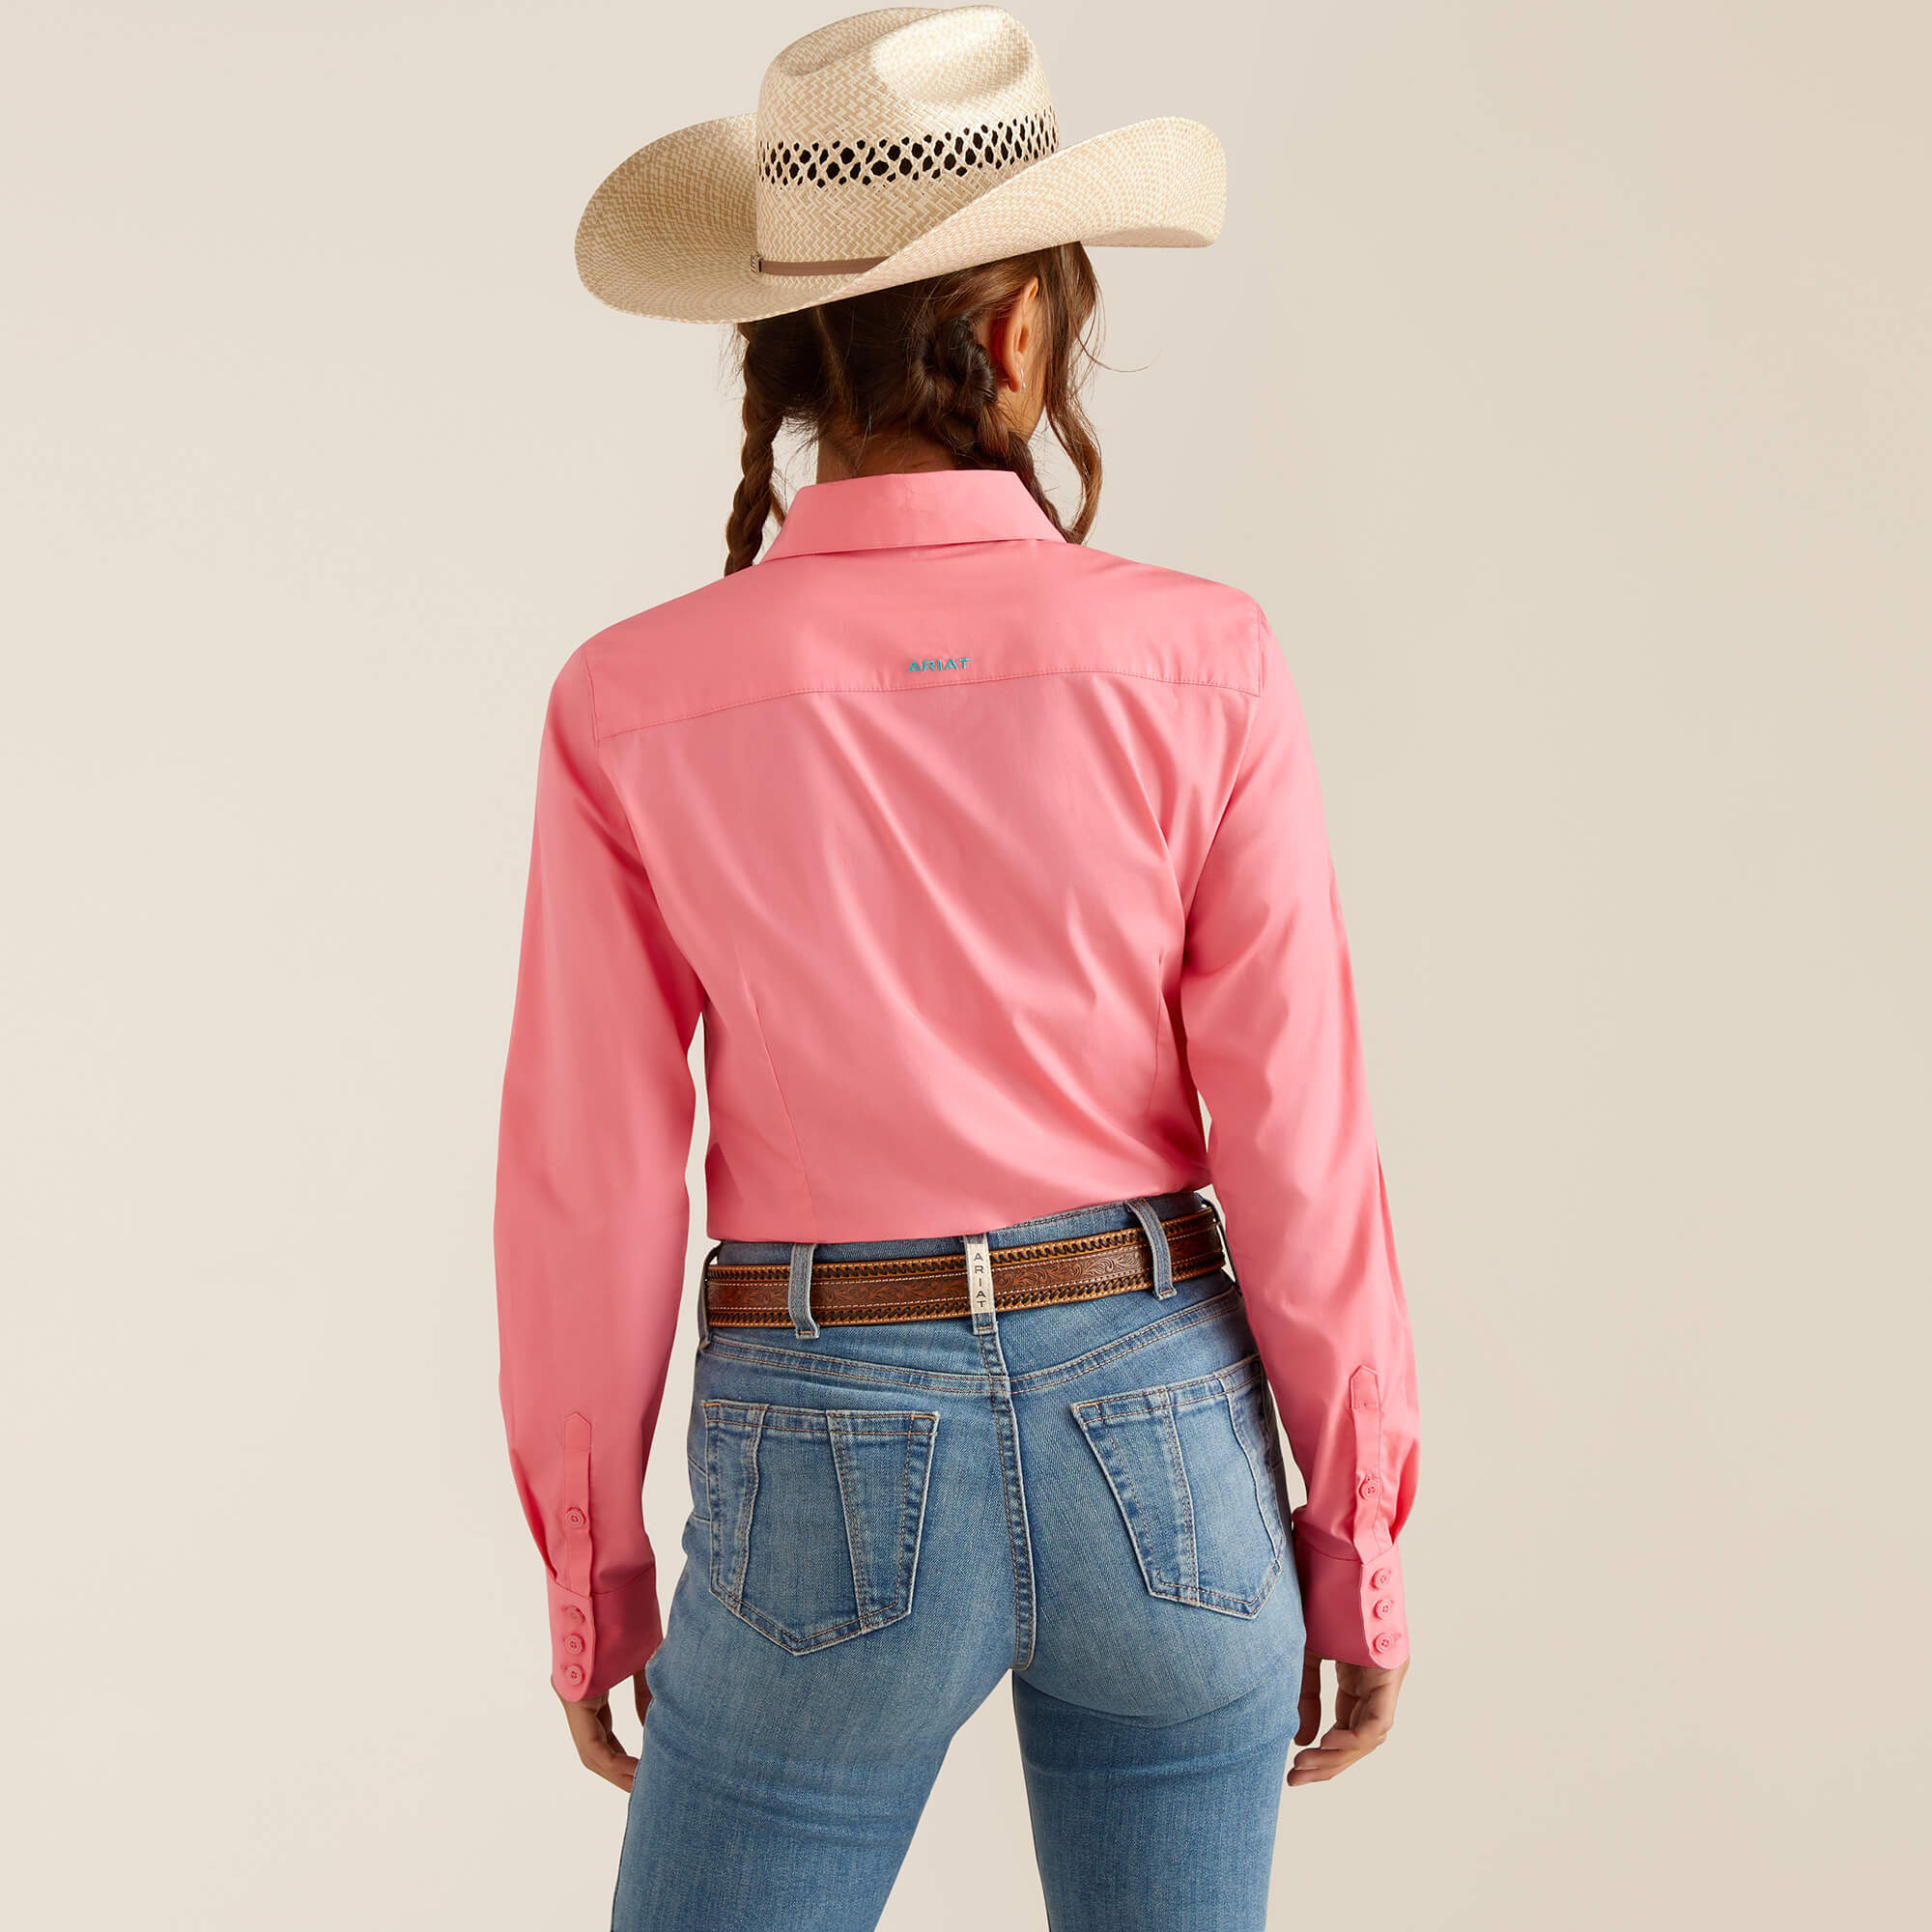 chemise pour l'équitation western pour femme de marque ariat modèle camelia de couleur rose